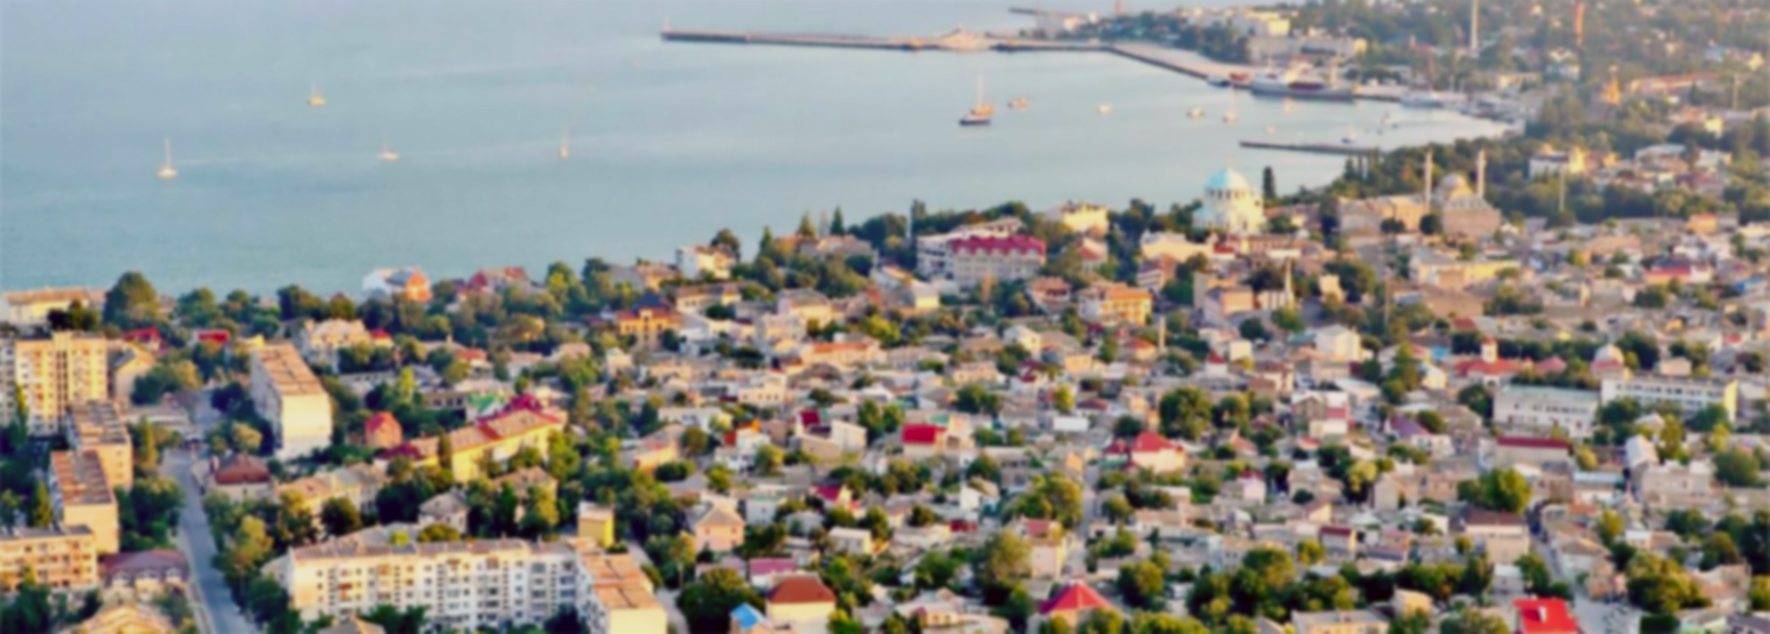 Город Саки в Крыму вид сверху